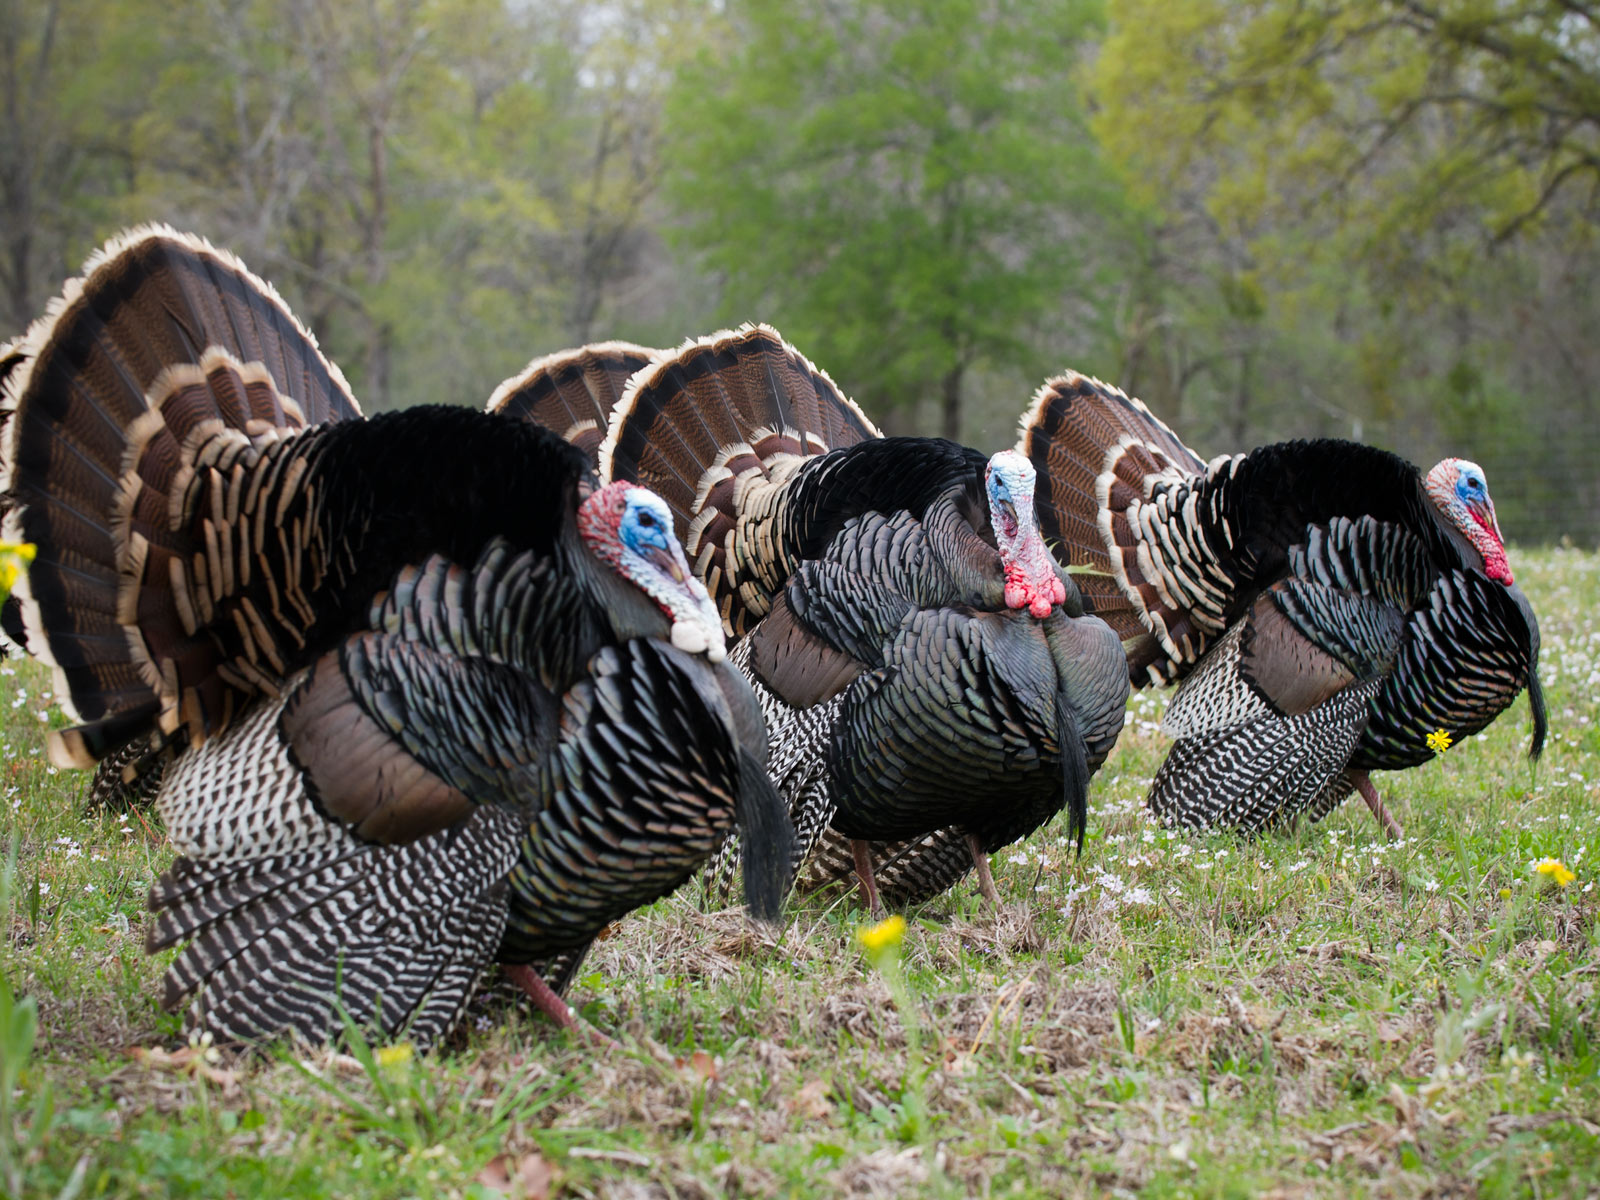 spring turkey hunting wallpaper